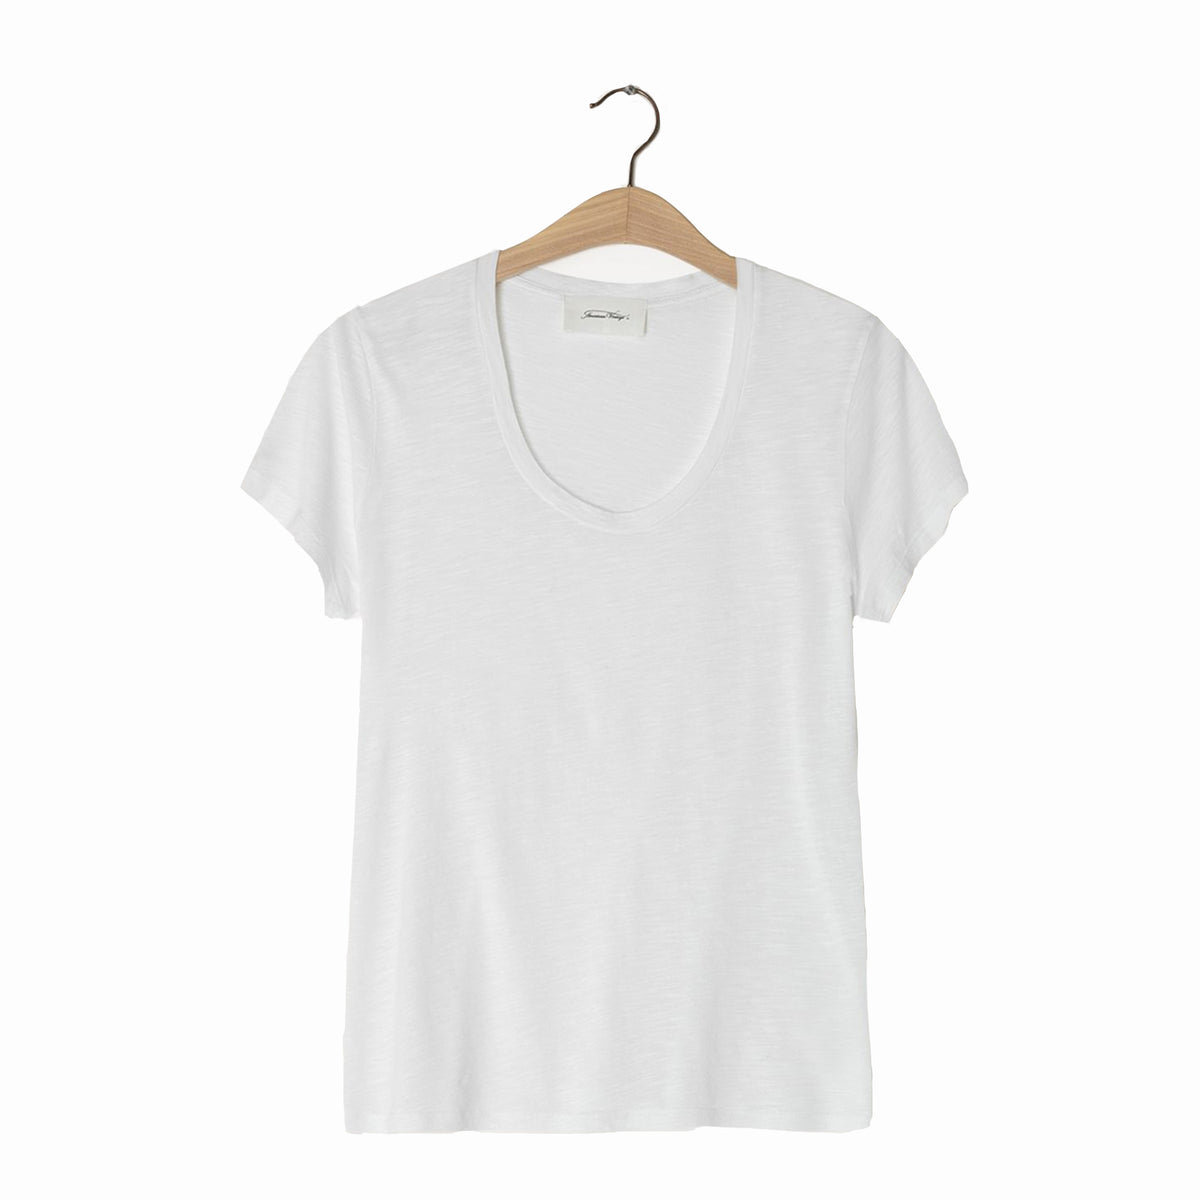 Jacksonville T-shirt White Jac48